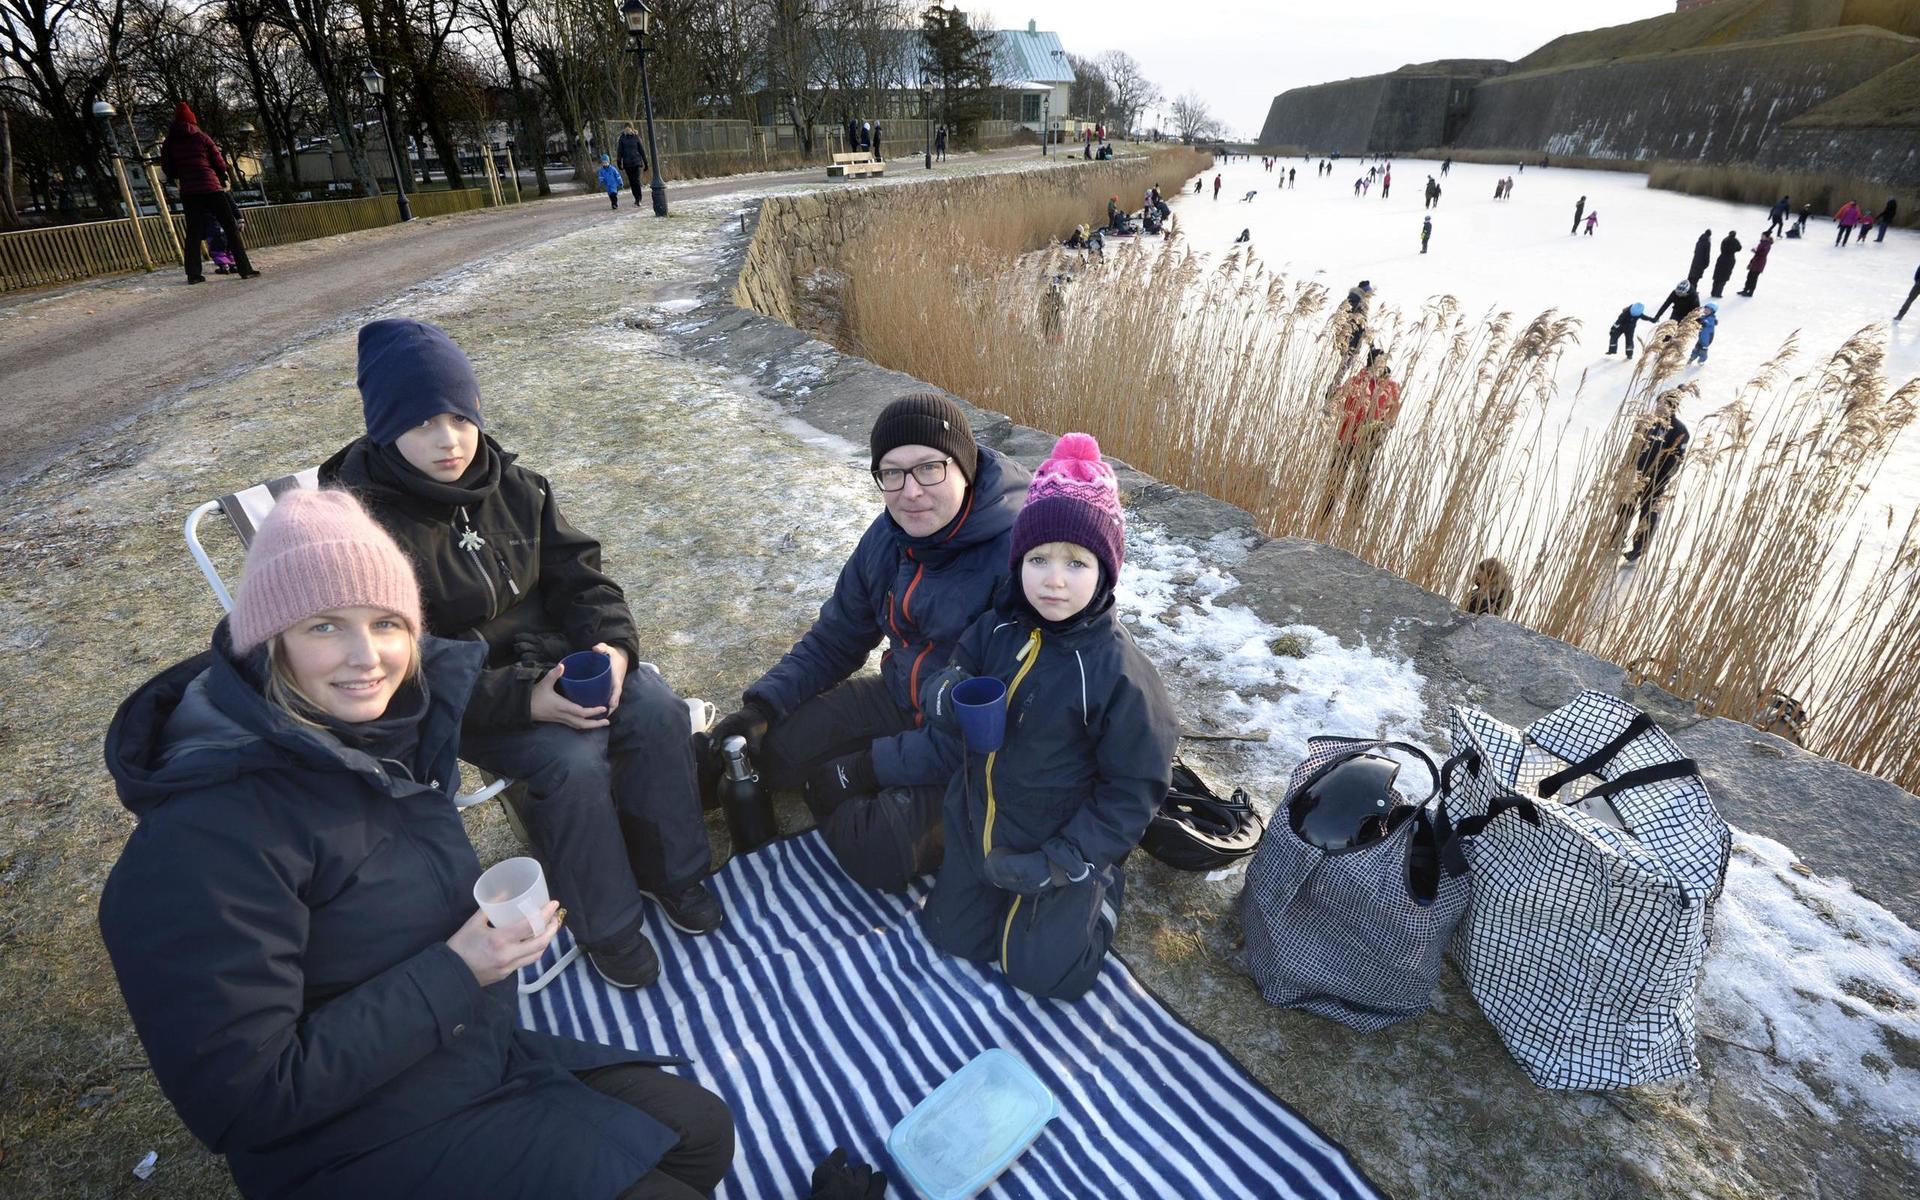 Lena Henriksson, Casper, 9 år, Mattias Nyman och Linnea, 5 år, hade åkt skridskor på vallgraven och drack sedan varm choklad.